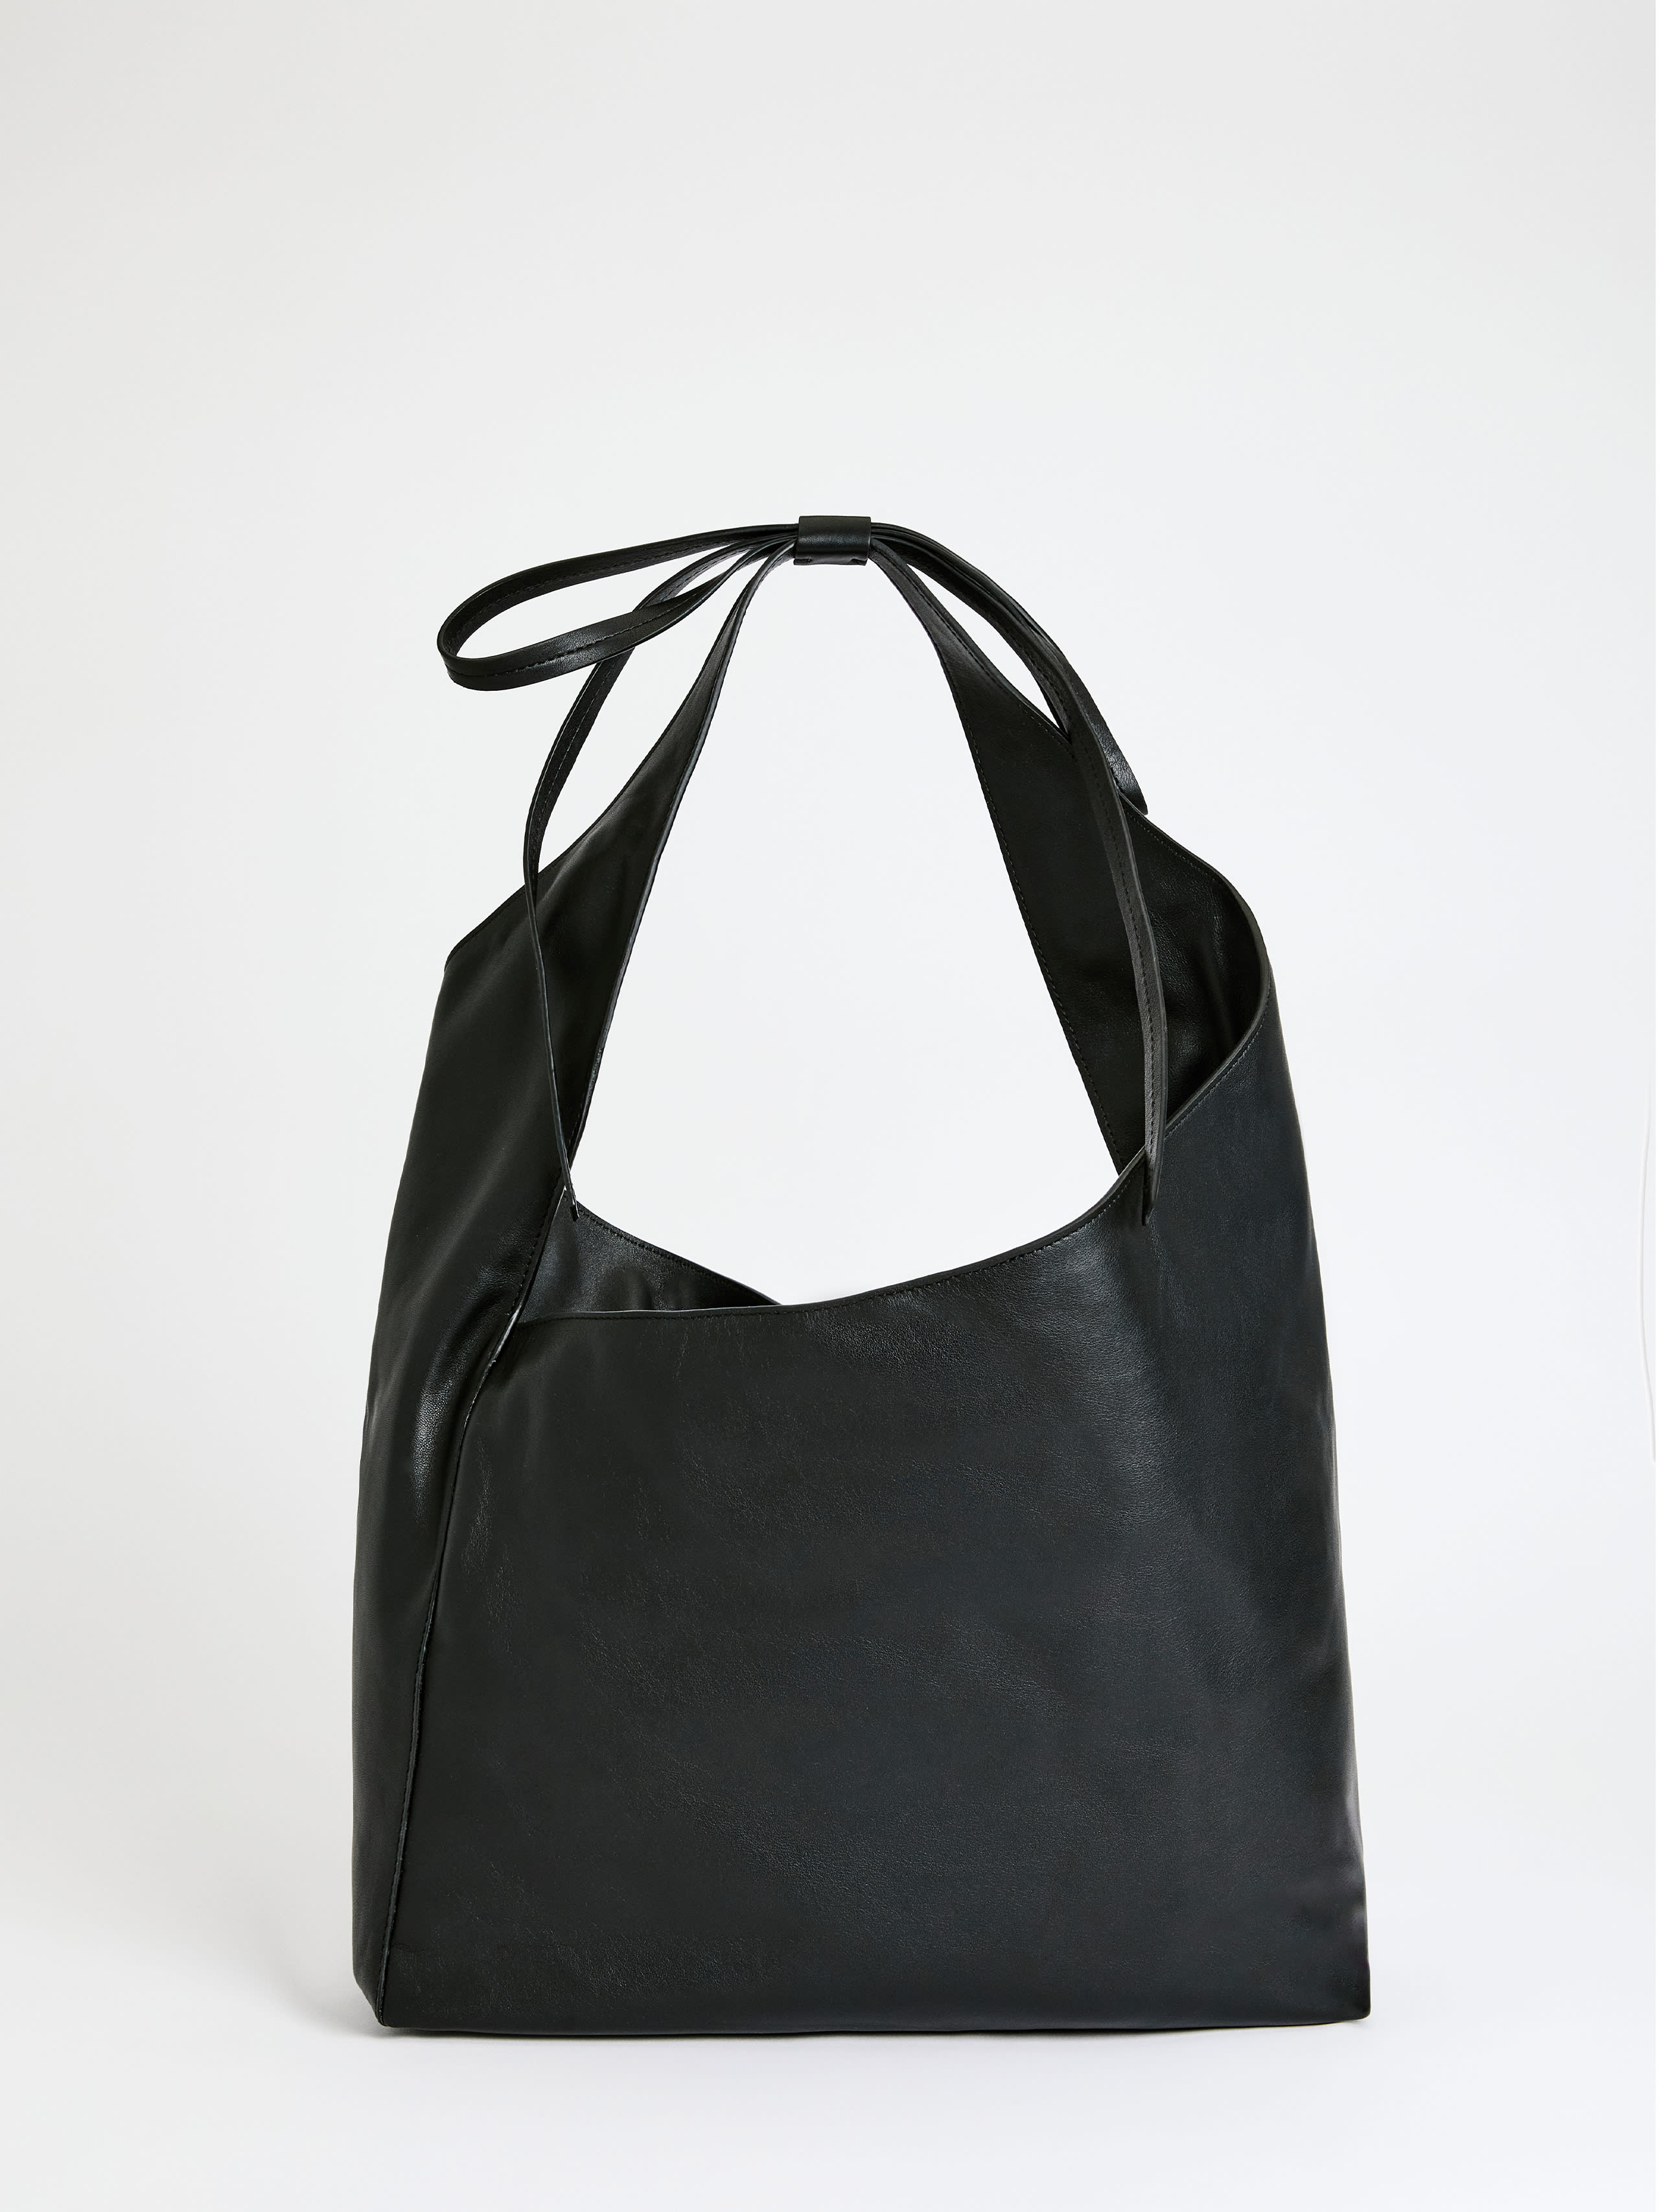 Reformation Medium Vittoria Tote Bag In Black Leather | ModeSens